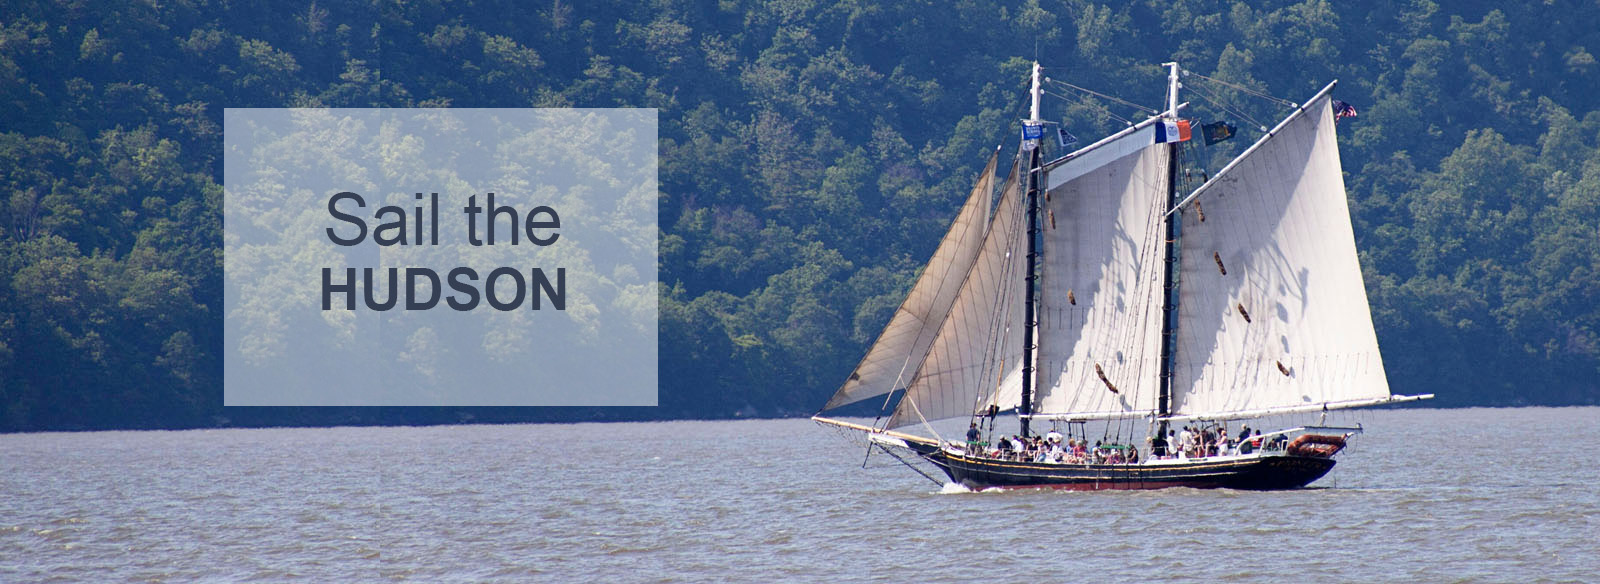 Sail the Hudson